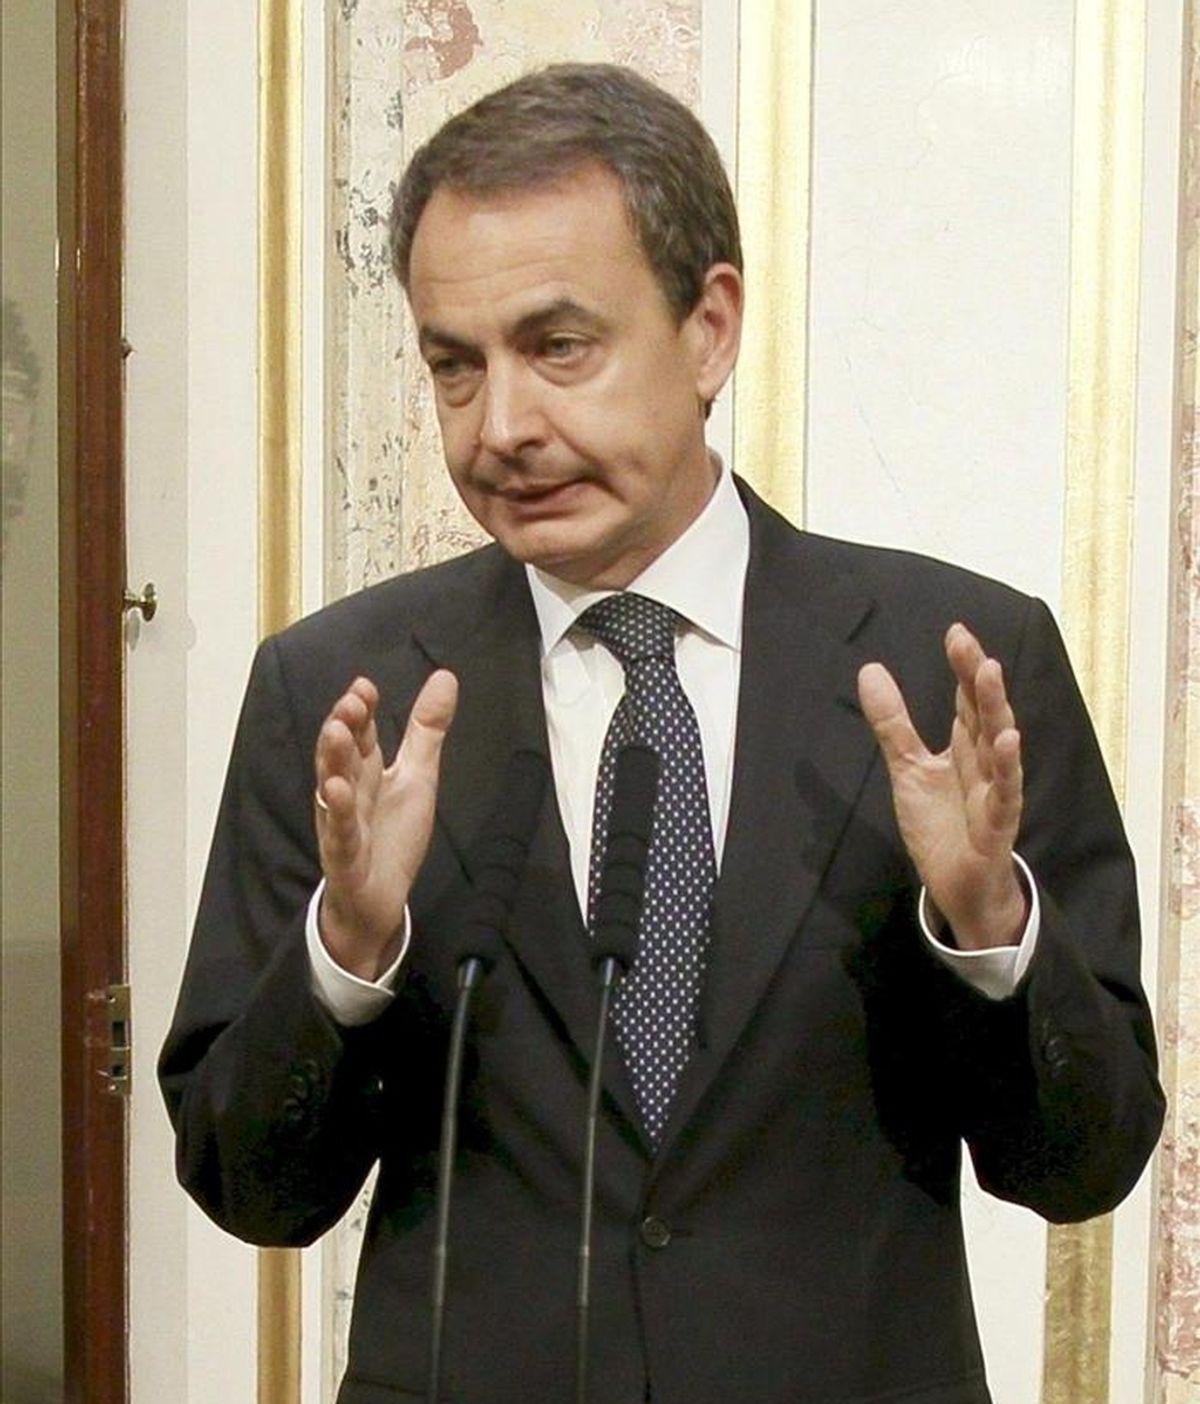 El presidente del Gobierno, José Luis Rodríguez Zapatero, durante la comparecencia que realizó ante los periodistas en el Congreso de los Diputados para enviar un mensaje de calma a la población de Lorca tras el terremoto que afectó ayer a la ciudad. EFE